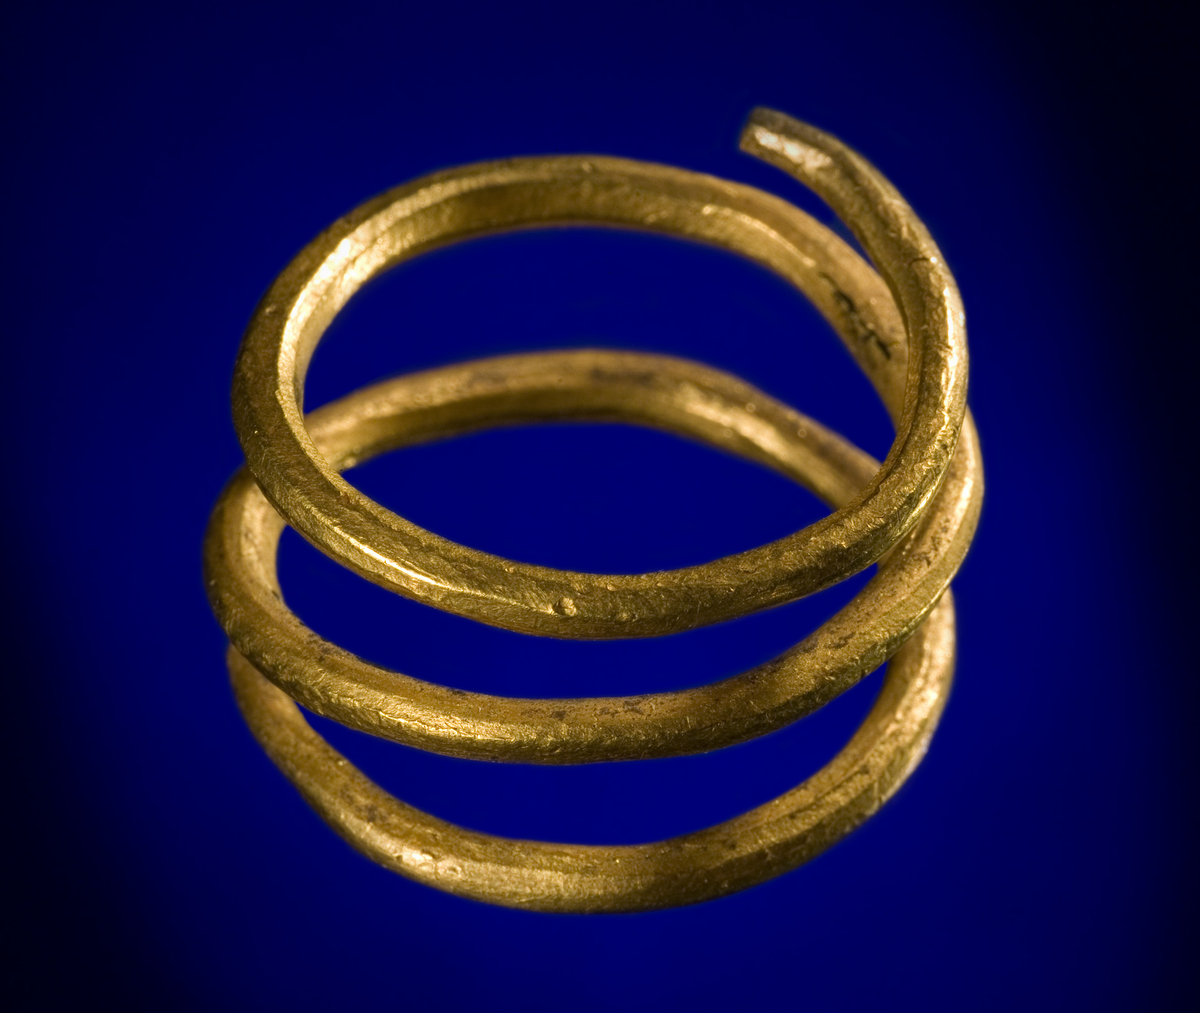 Spiralfingerring av guld av typen R. 183. Den adskiller sig fra typeeksemplaret ved at tenen er noe tynnere, og at den er snodd den andre veien. Tverrmål 2,3 cm, tenens tverrmål 0,15 cm. Vekt 11,85 gr.